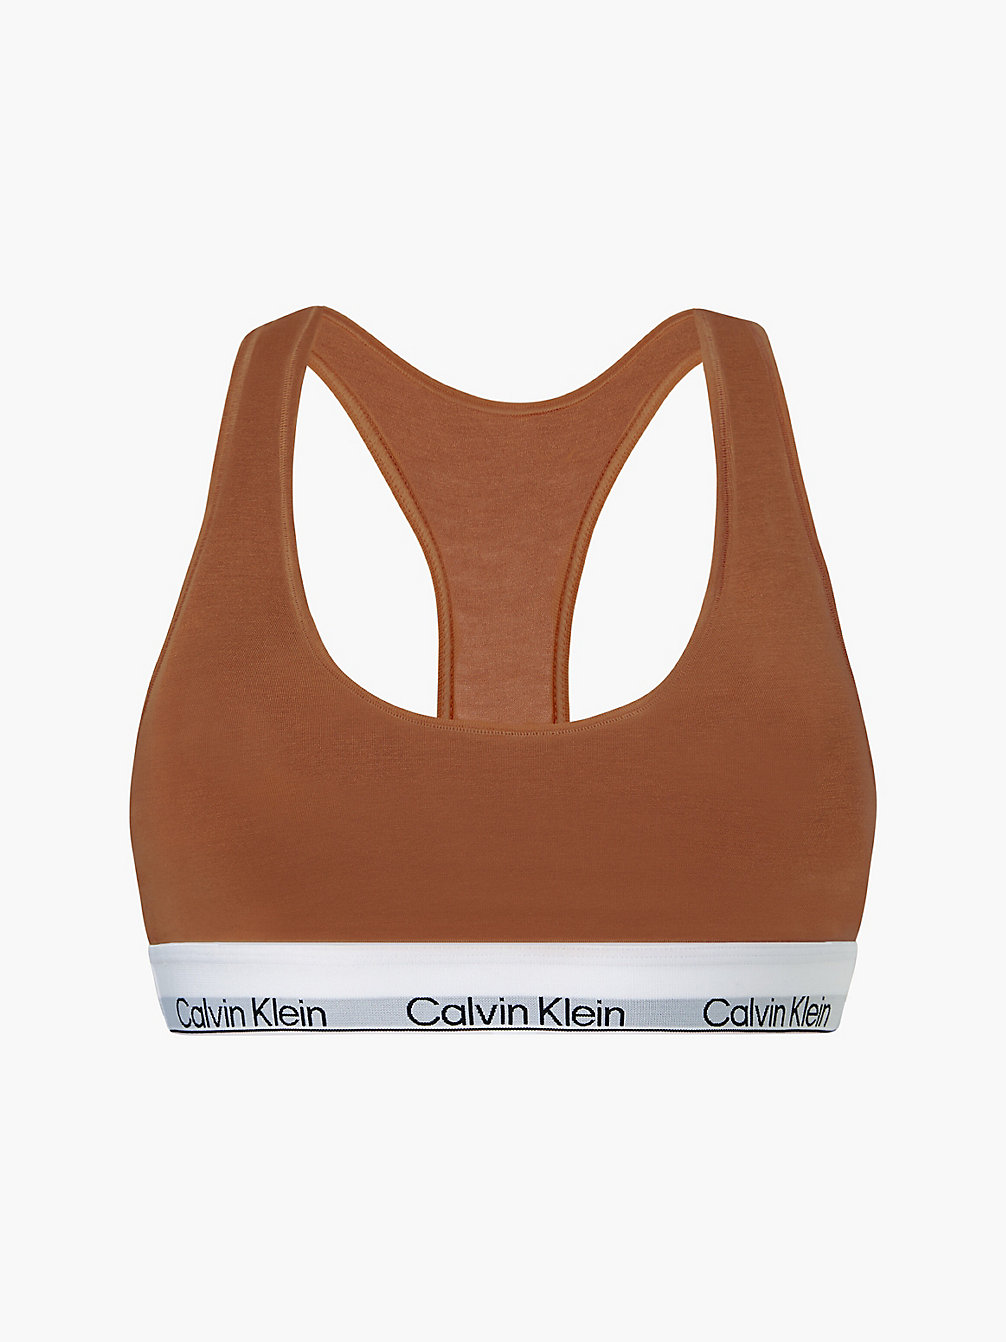 WARM BRONZE > Bralette – Modern Cotton > undefined Damen - Calvin Klein